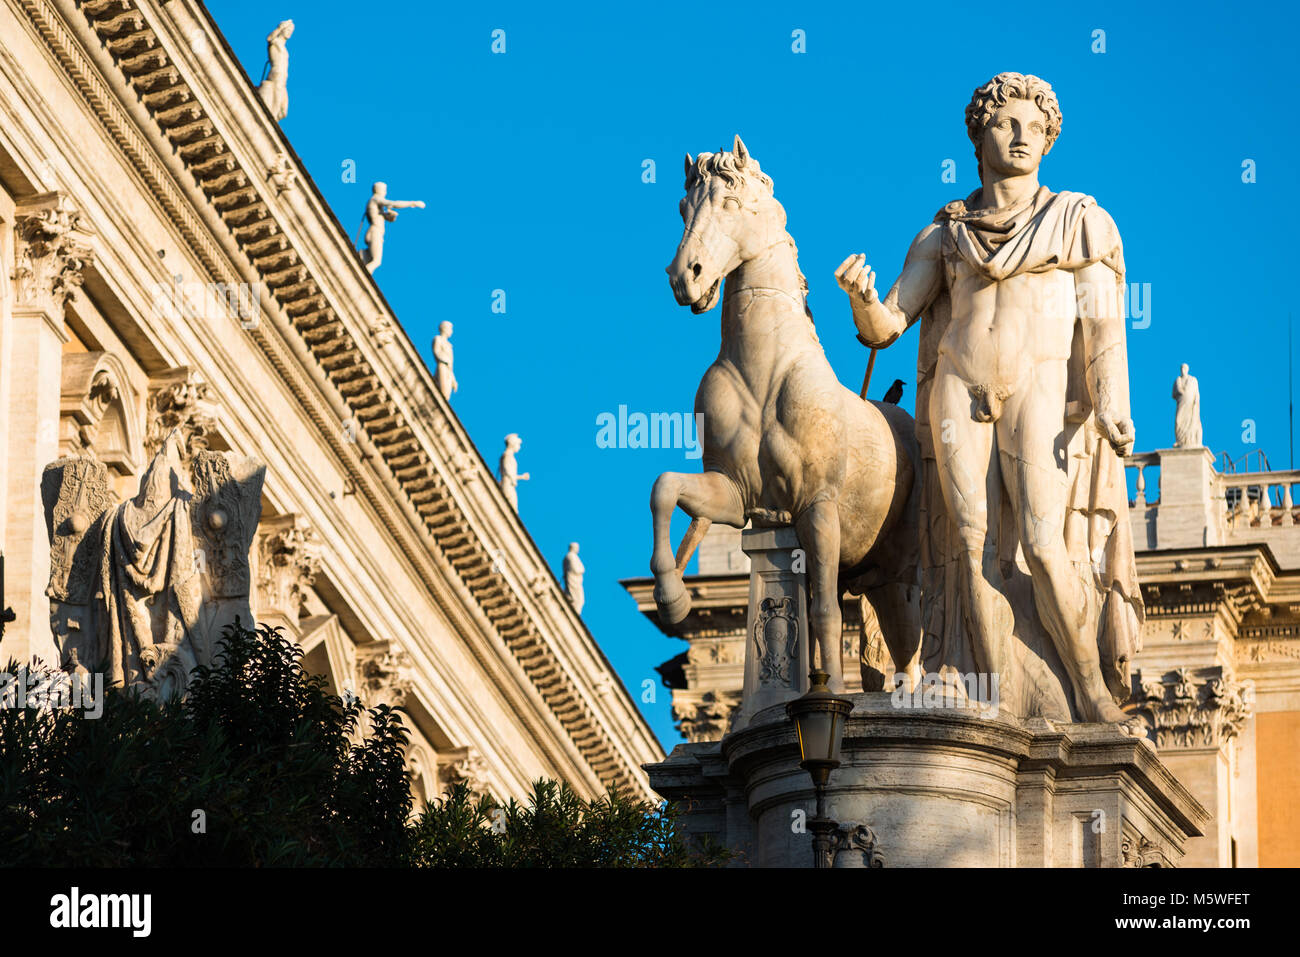 Uno dei due dioscuri (Gemini gemelli - o di Castore e Polluce) statue sul Campidoglio a Roma. Foto Stock